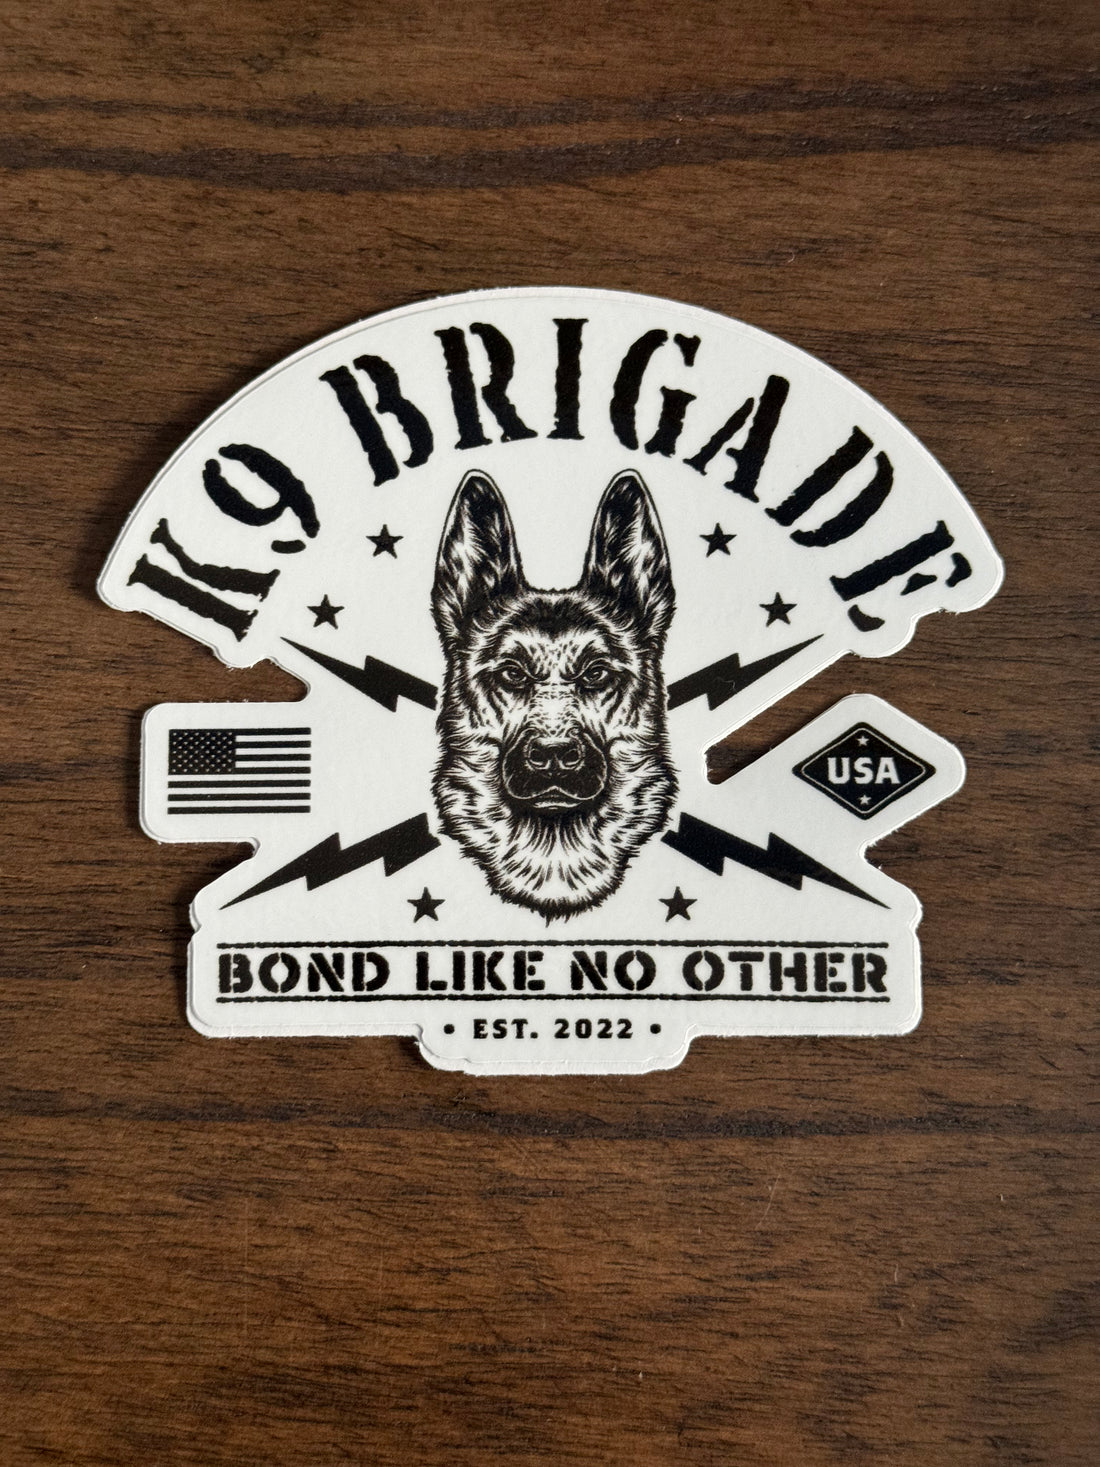 K9 Brigade Sticker